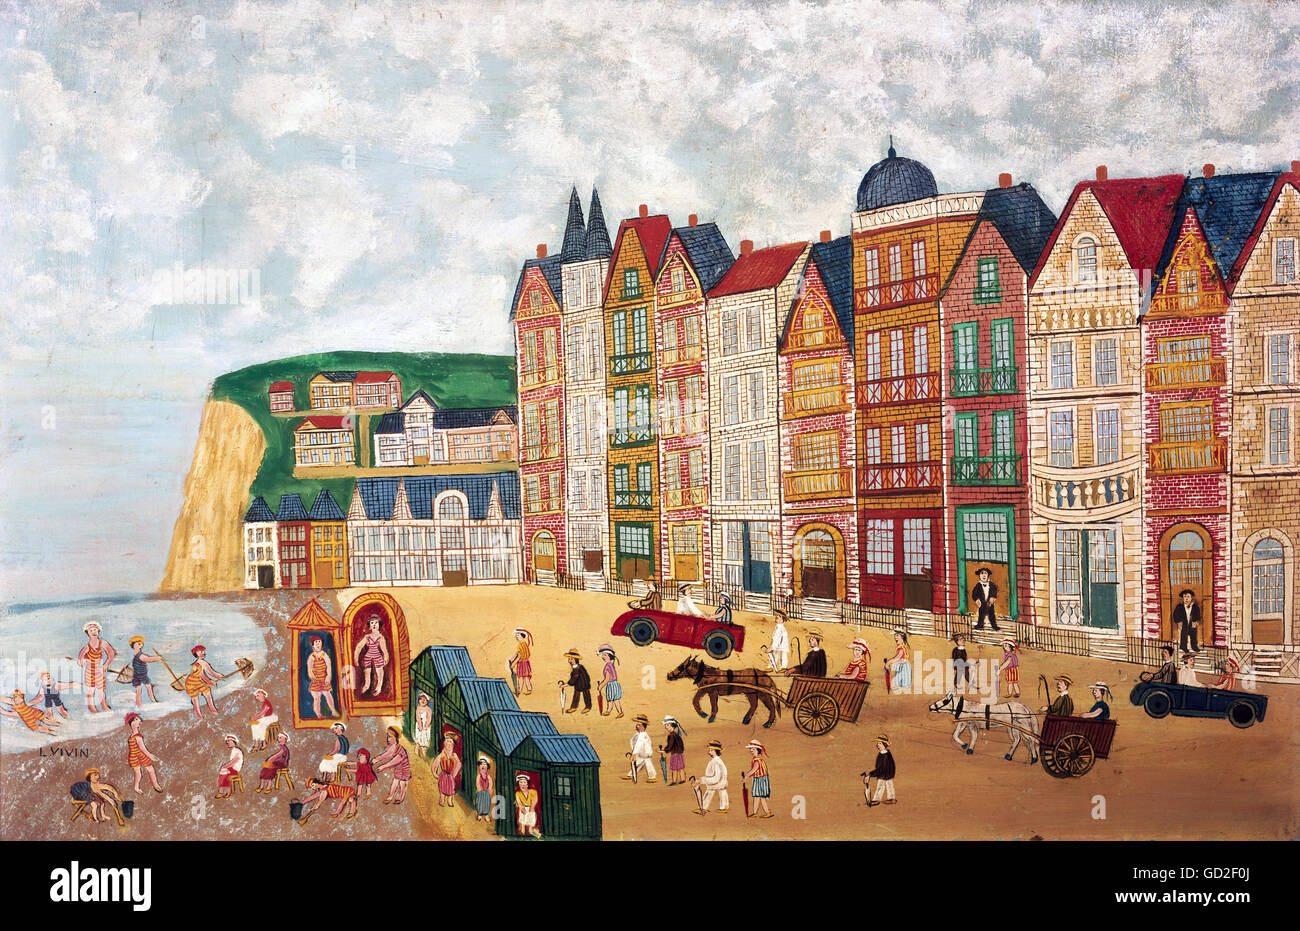 Bildende Kunst, Viven, Louis (1861-1936), der Malerei, der "Strand", Öl auf Leinwand, Privatsammlung, Artist's Urheberrecht nicht geklärt zu werden. Stockfoto